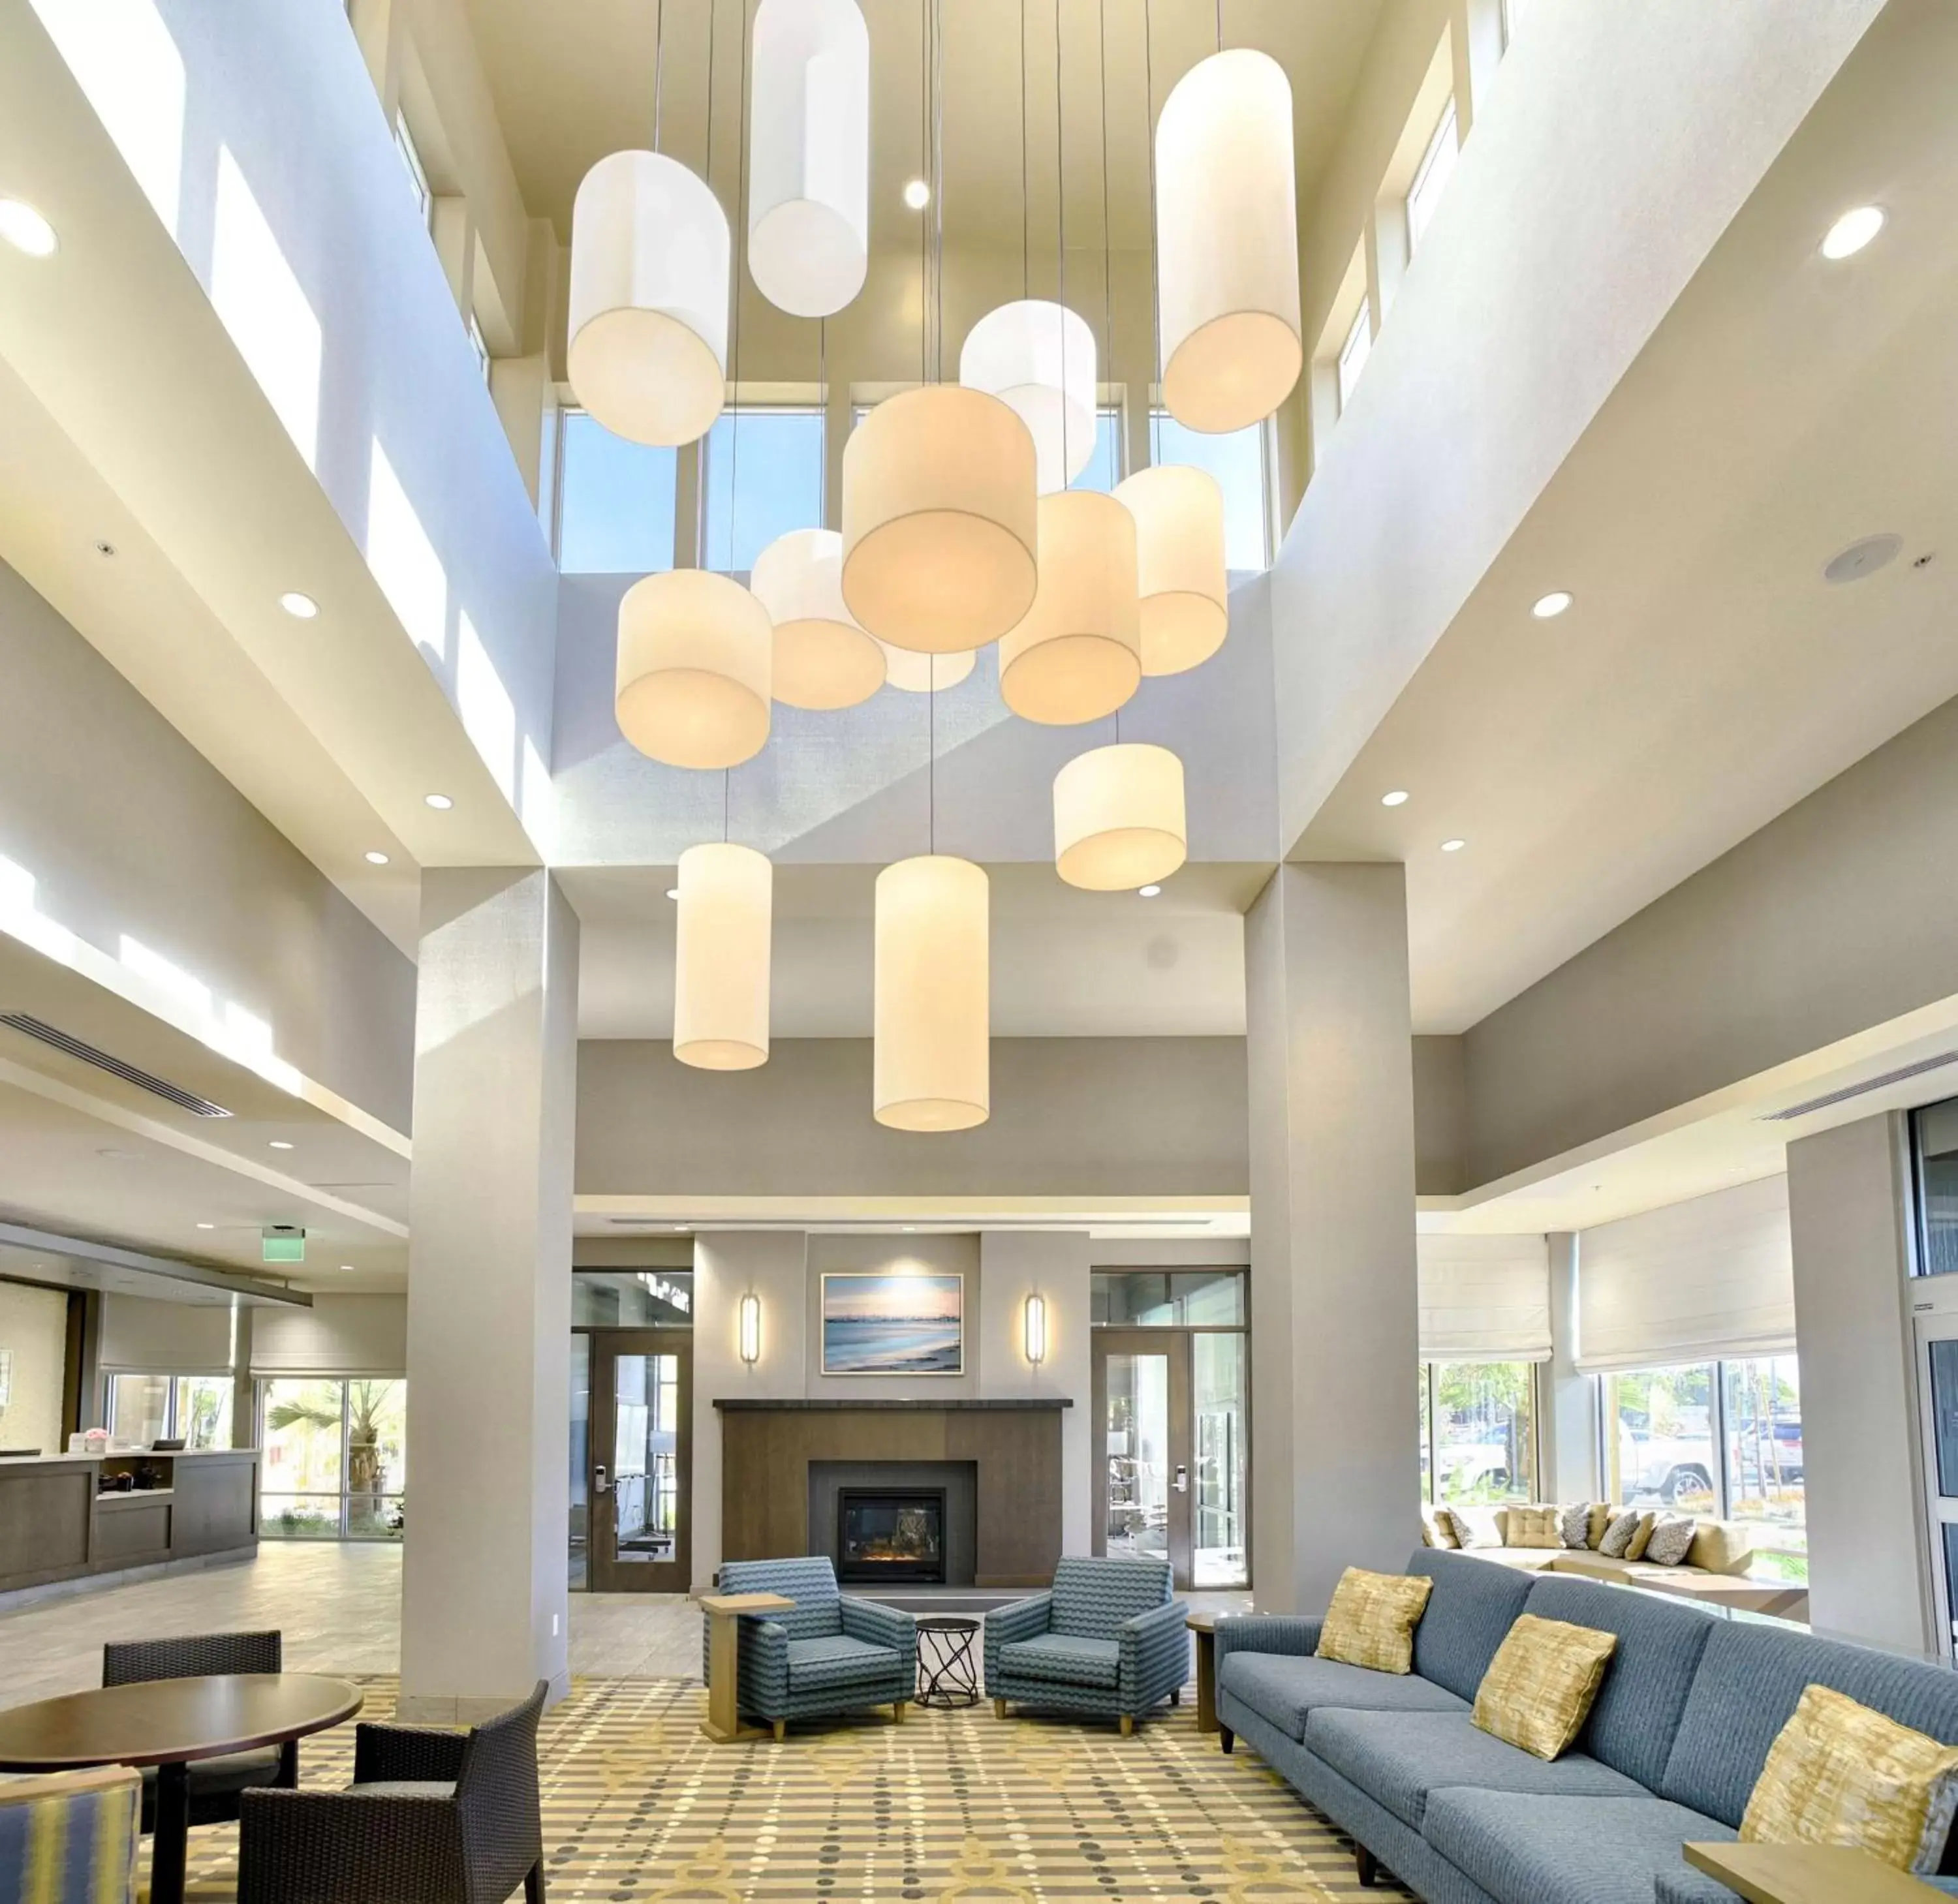 Lobby or reception, Lobby/Reception in Hilton Garden Inn Santa Barbara/Goleta